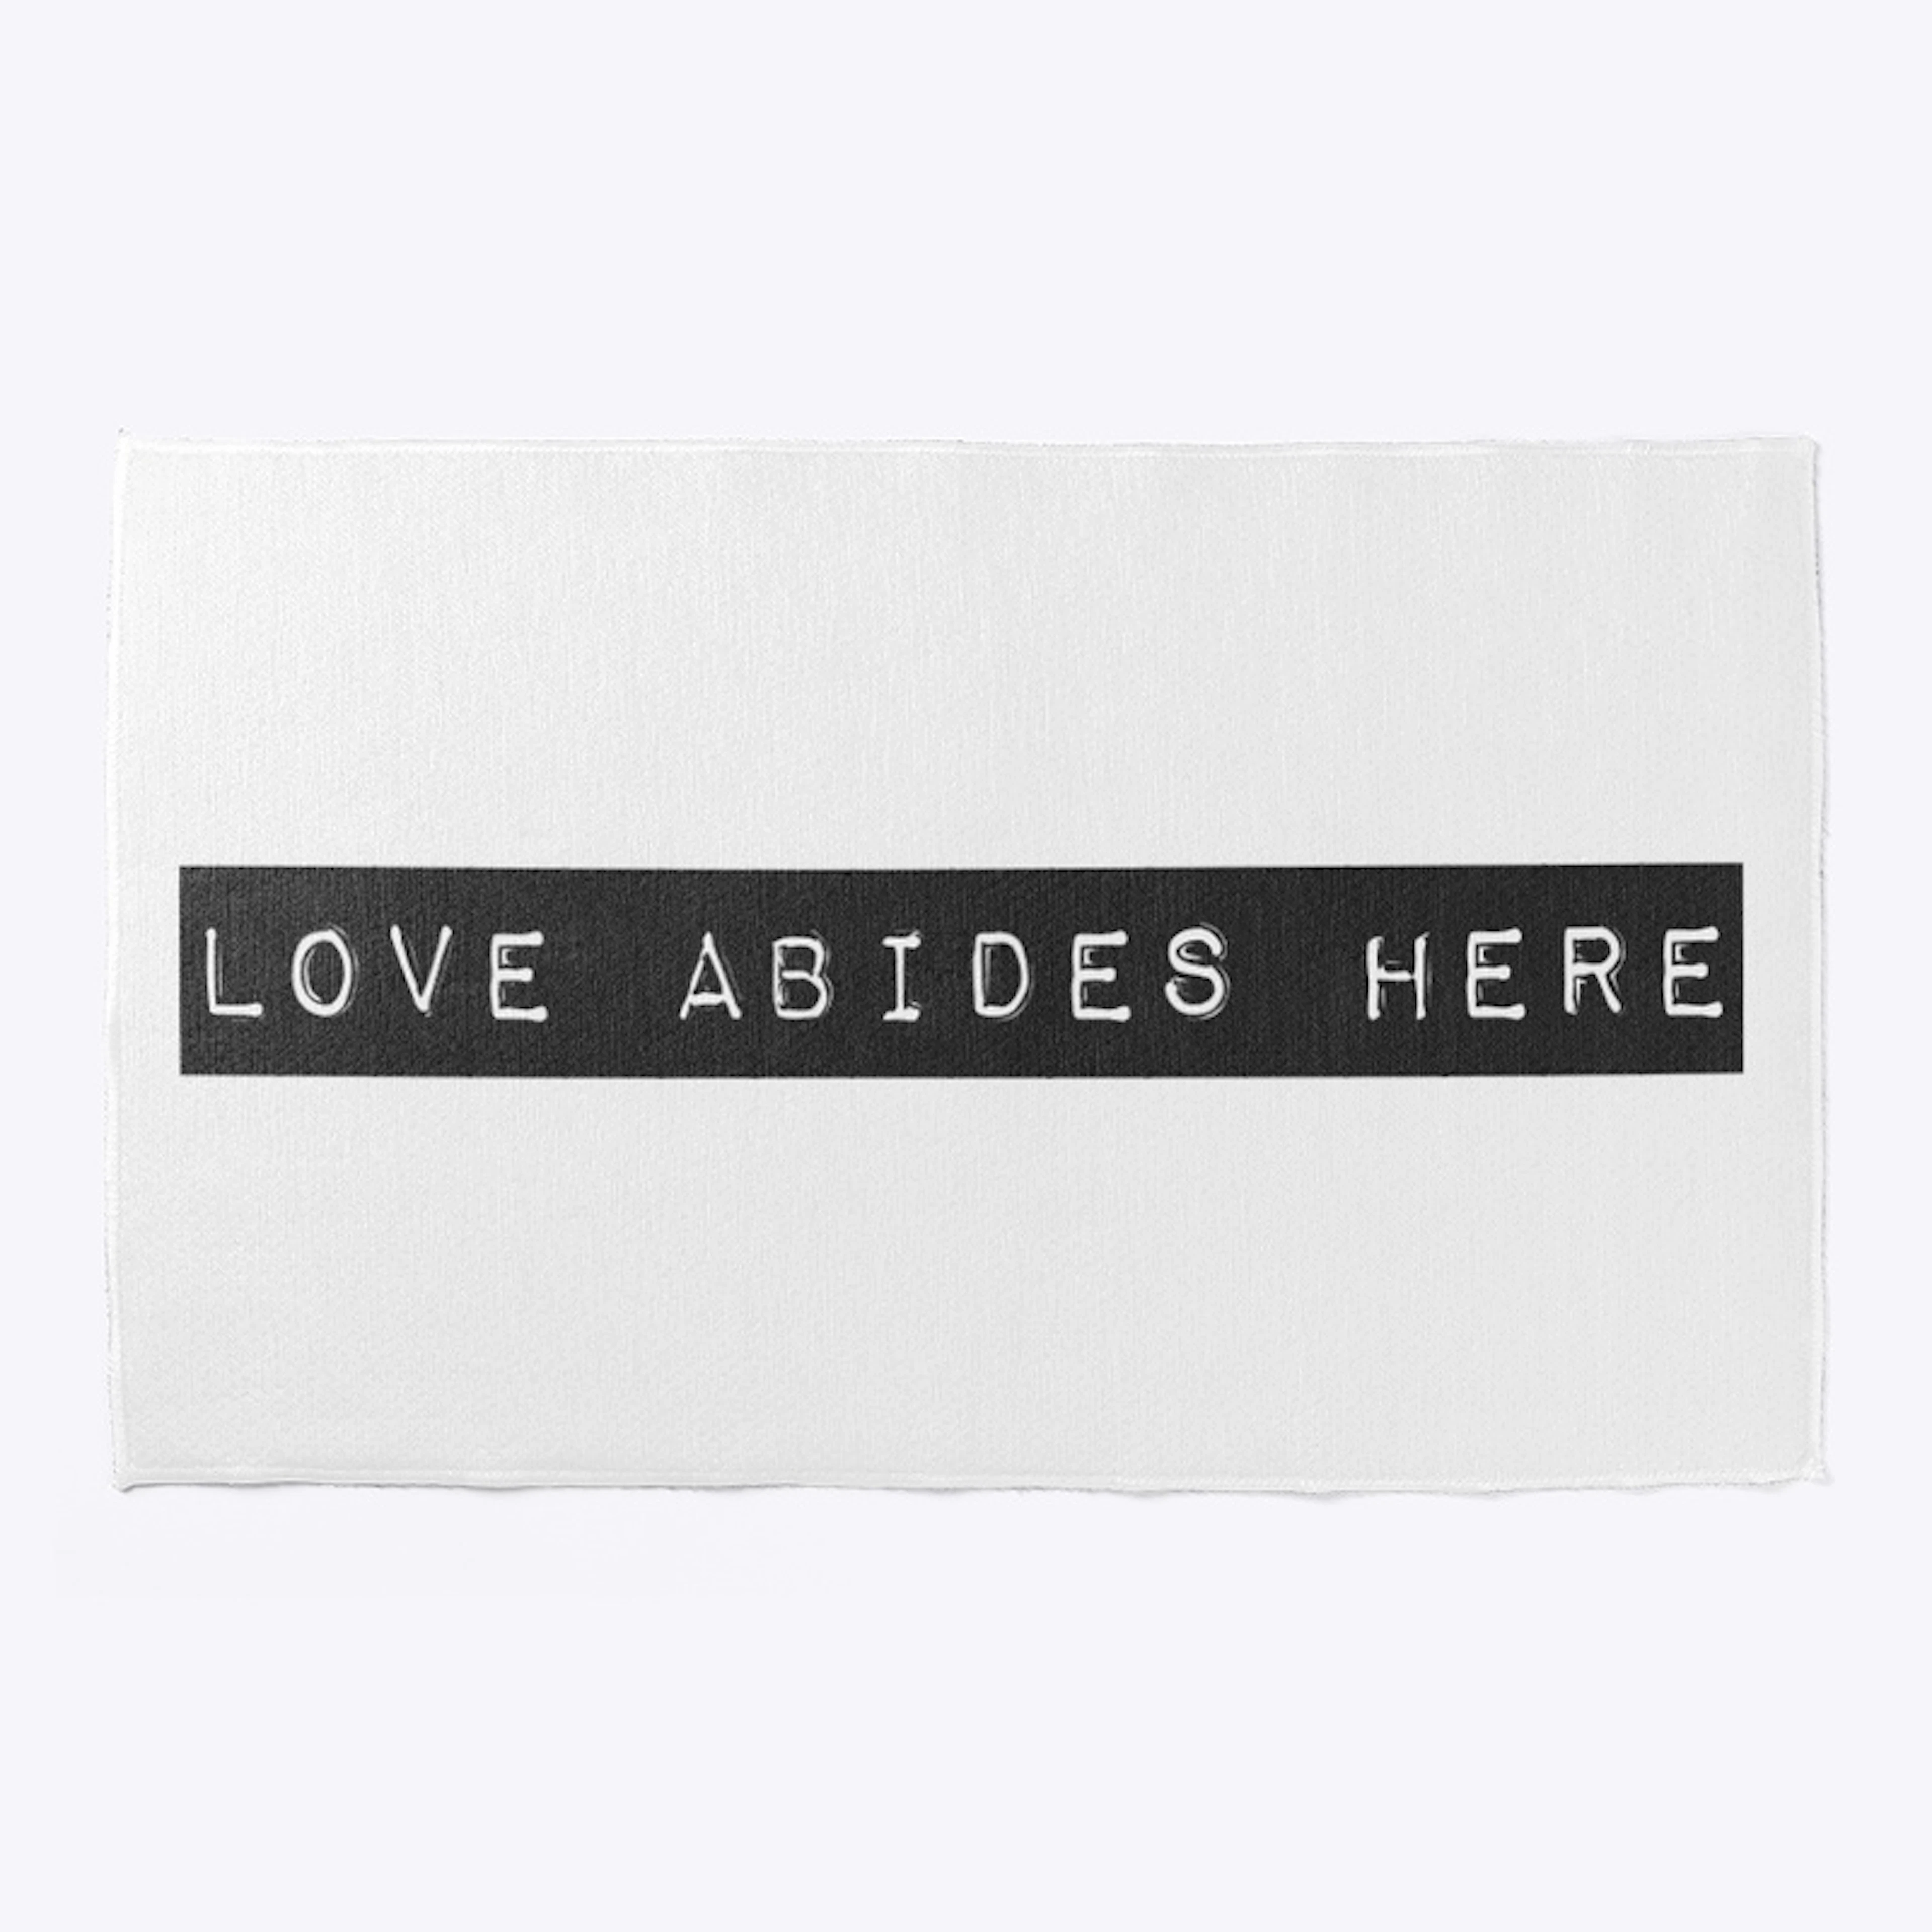 Love abides here 